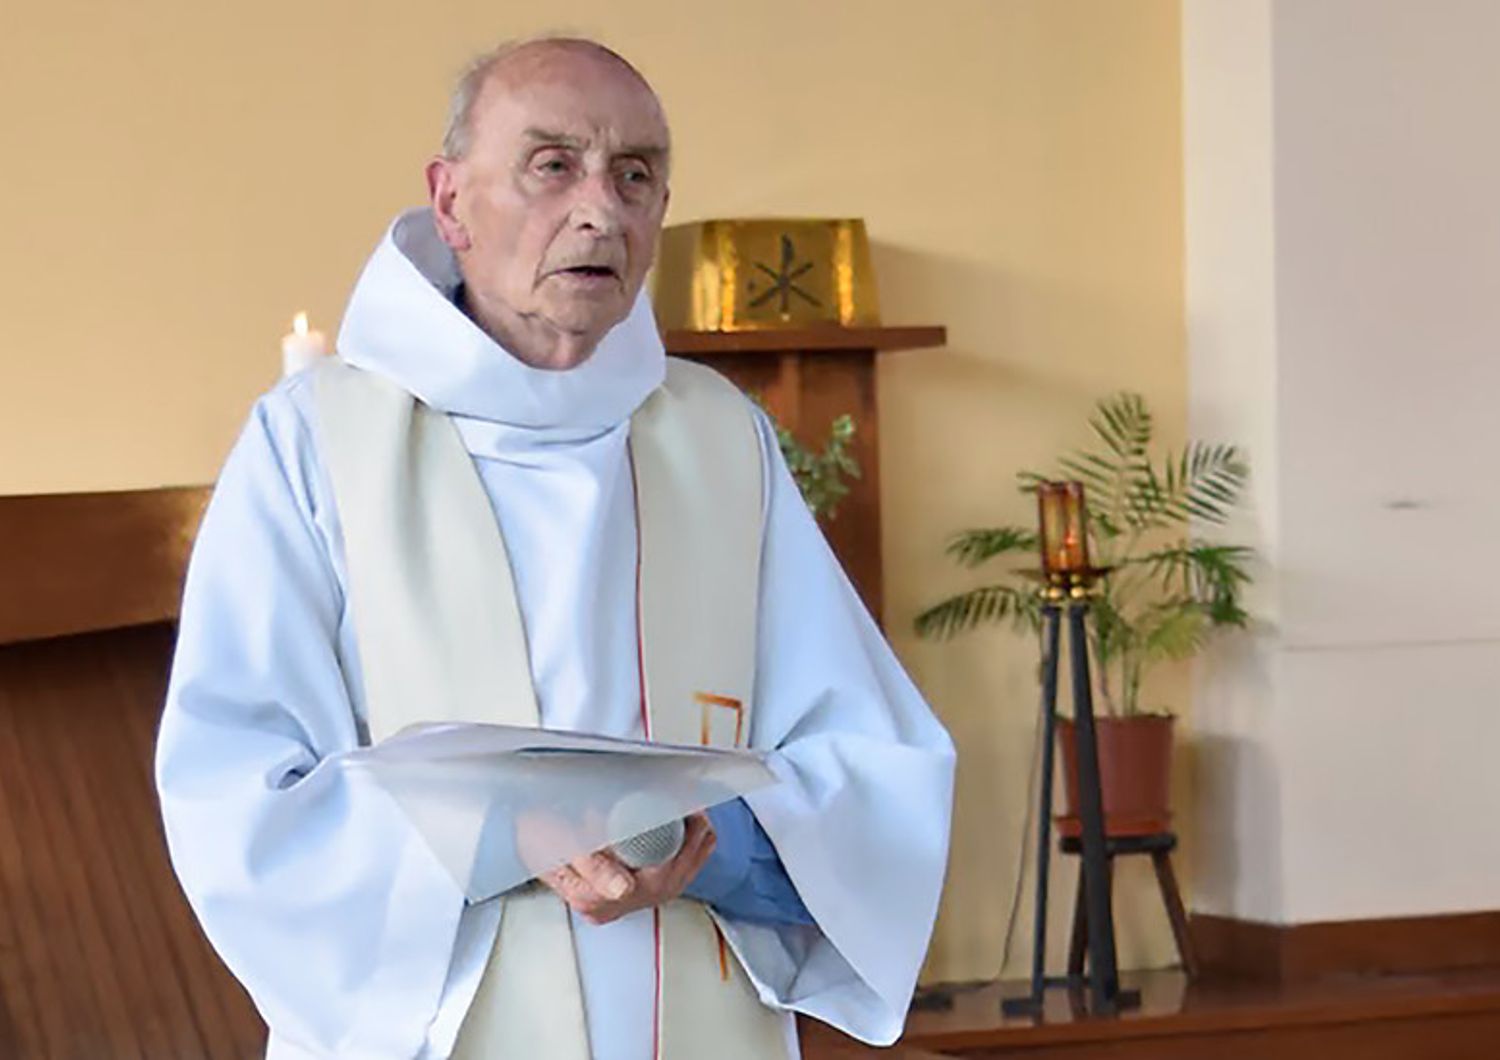 Il sacerdote ucciso si chiamava Jacques Hamel, aveva 86 anni, ed era stato ordinato sacerdote nel 1958